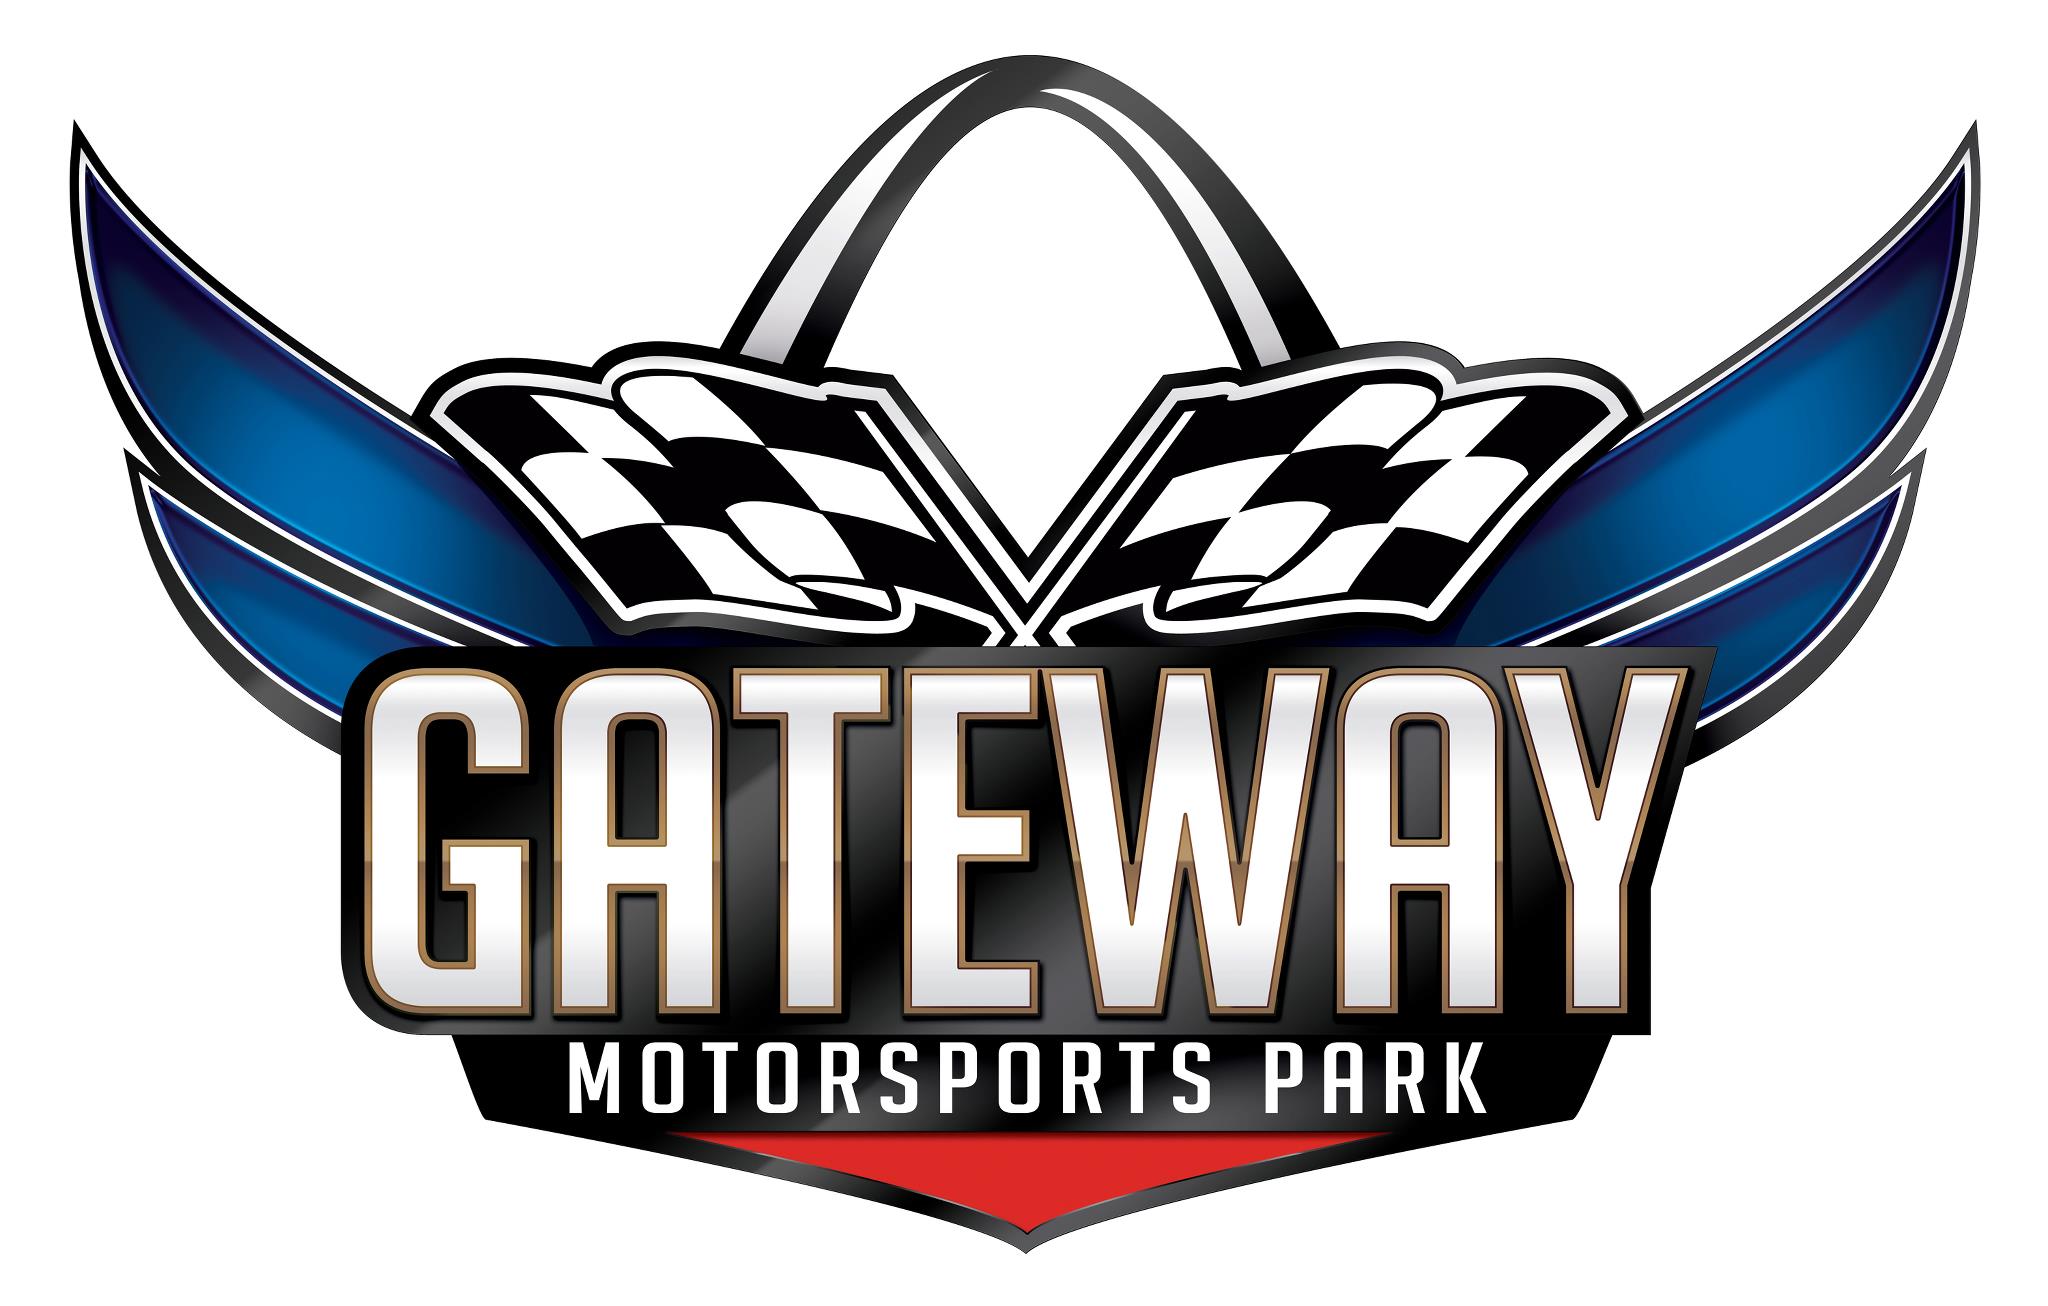 Top Gateway Logo Wallpaper